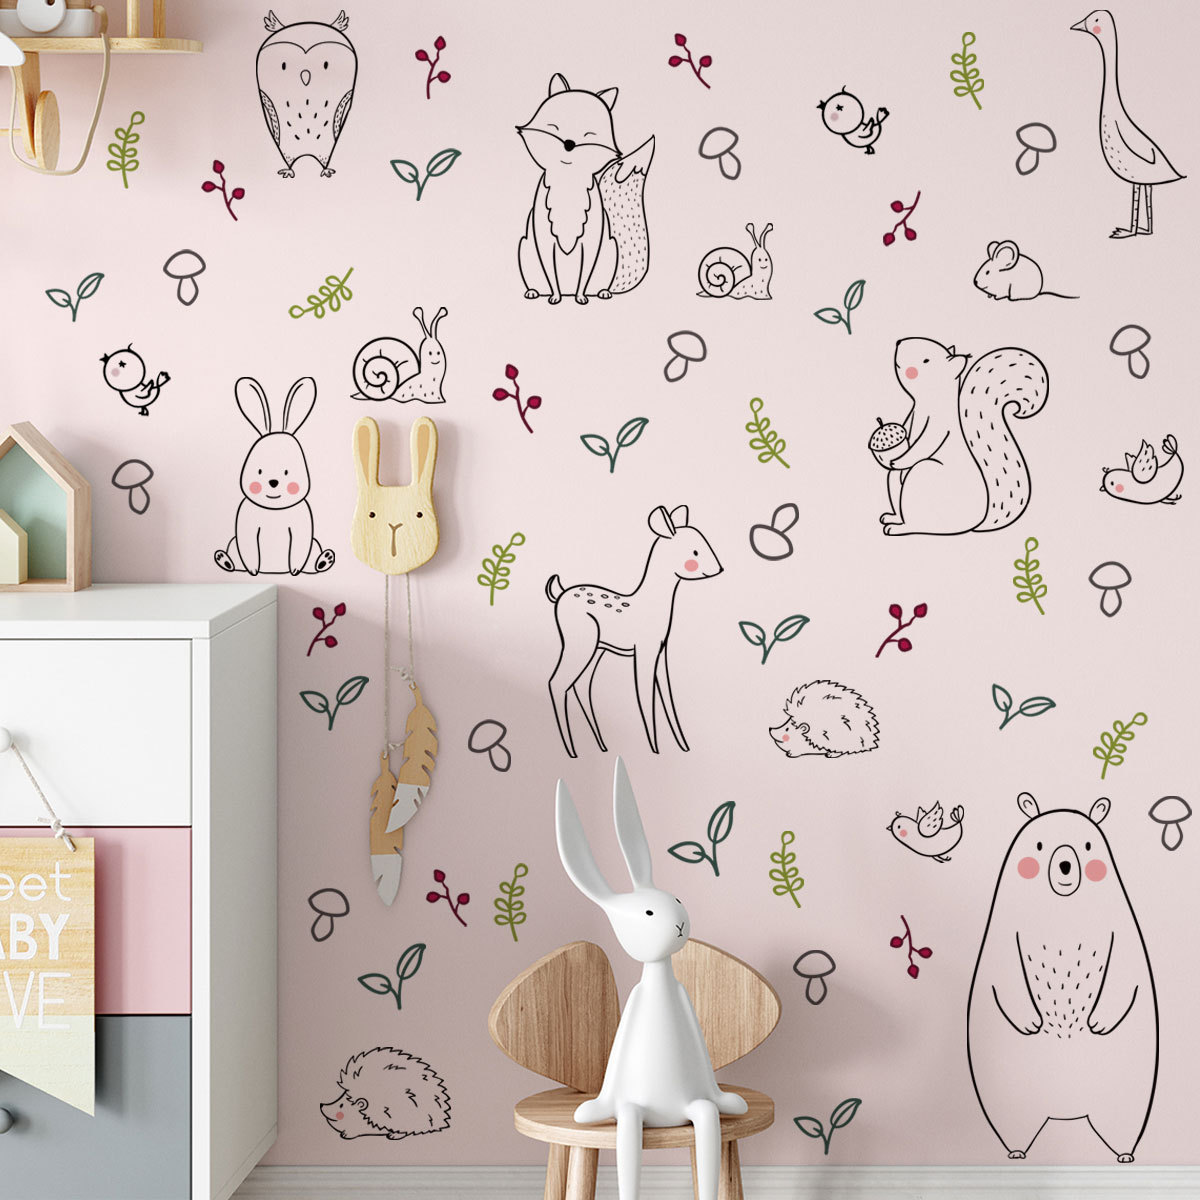 ZSZ1448卡通动物创意墙贴客厅卧室儿童房幼儿园墙角装饰墙贴画